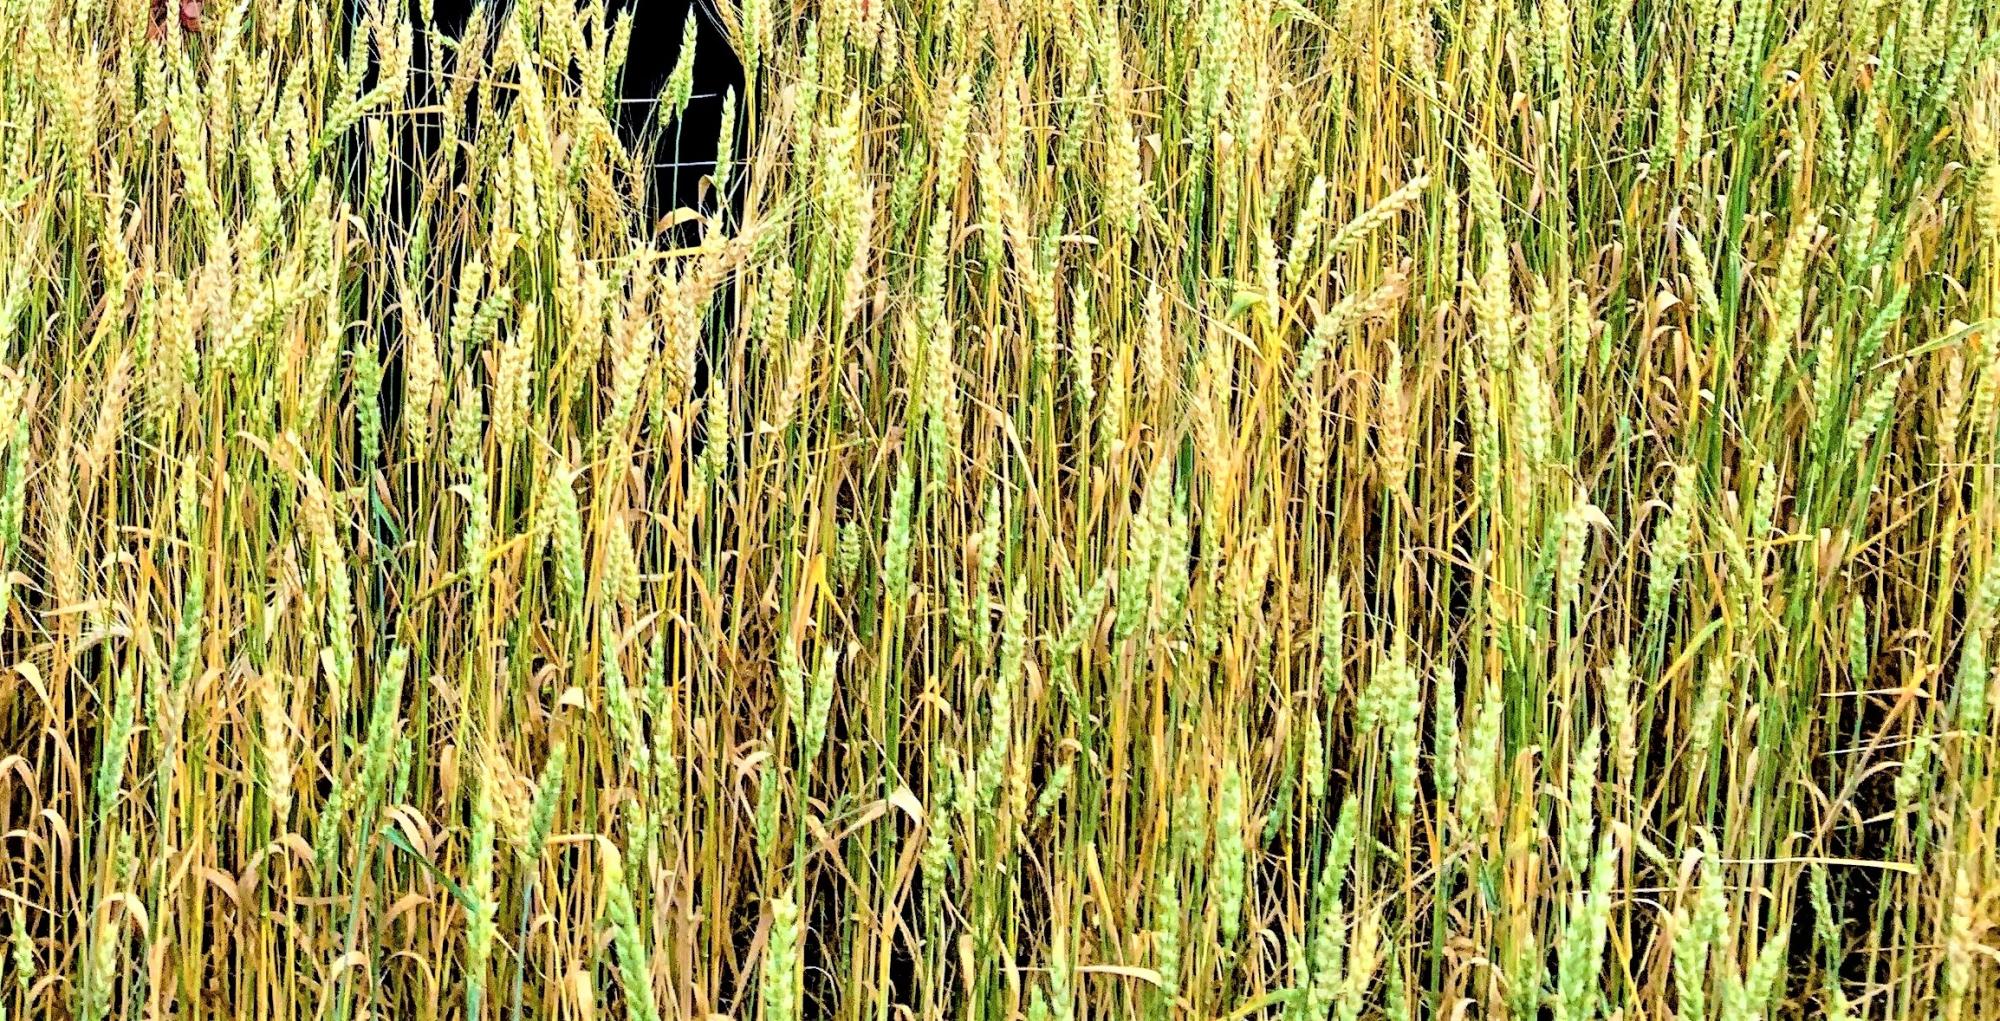 Снижение мирового объема производства пшеницы прогнозируют в новом сезоне